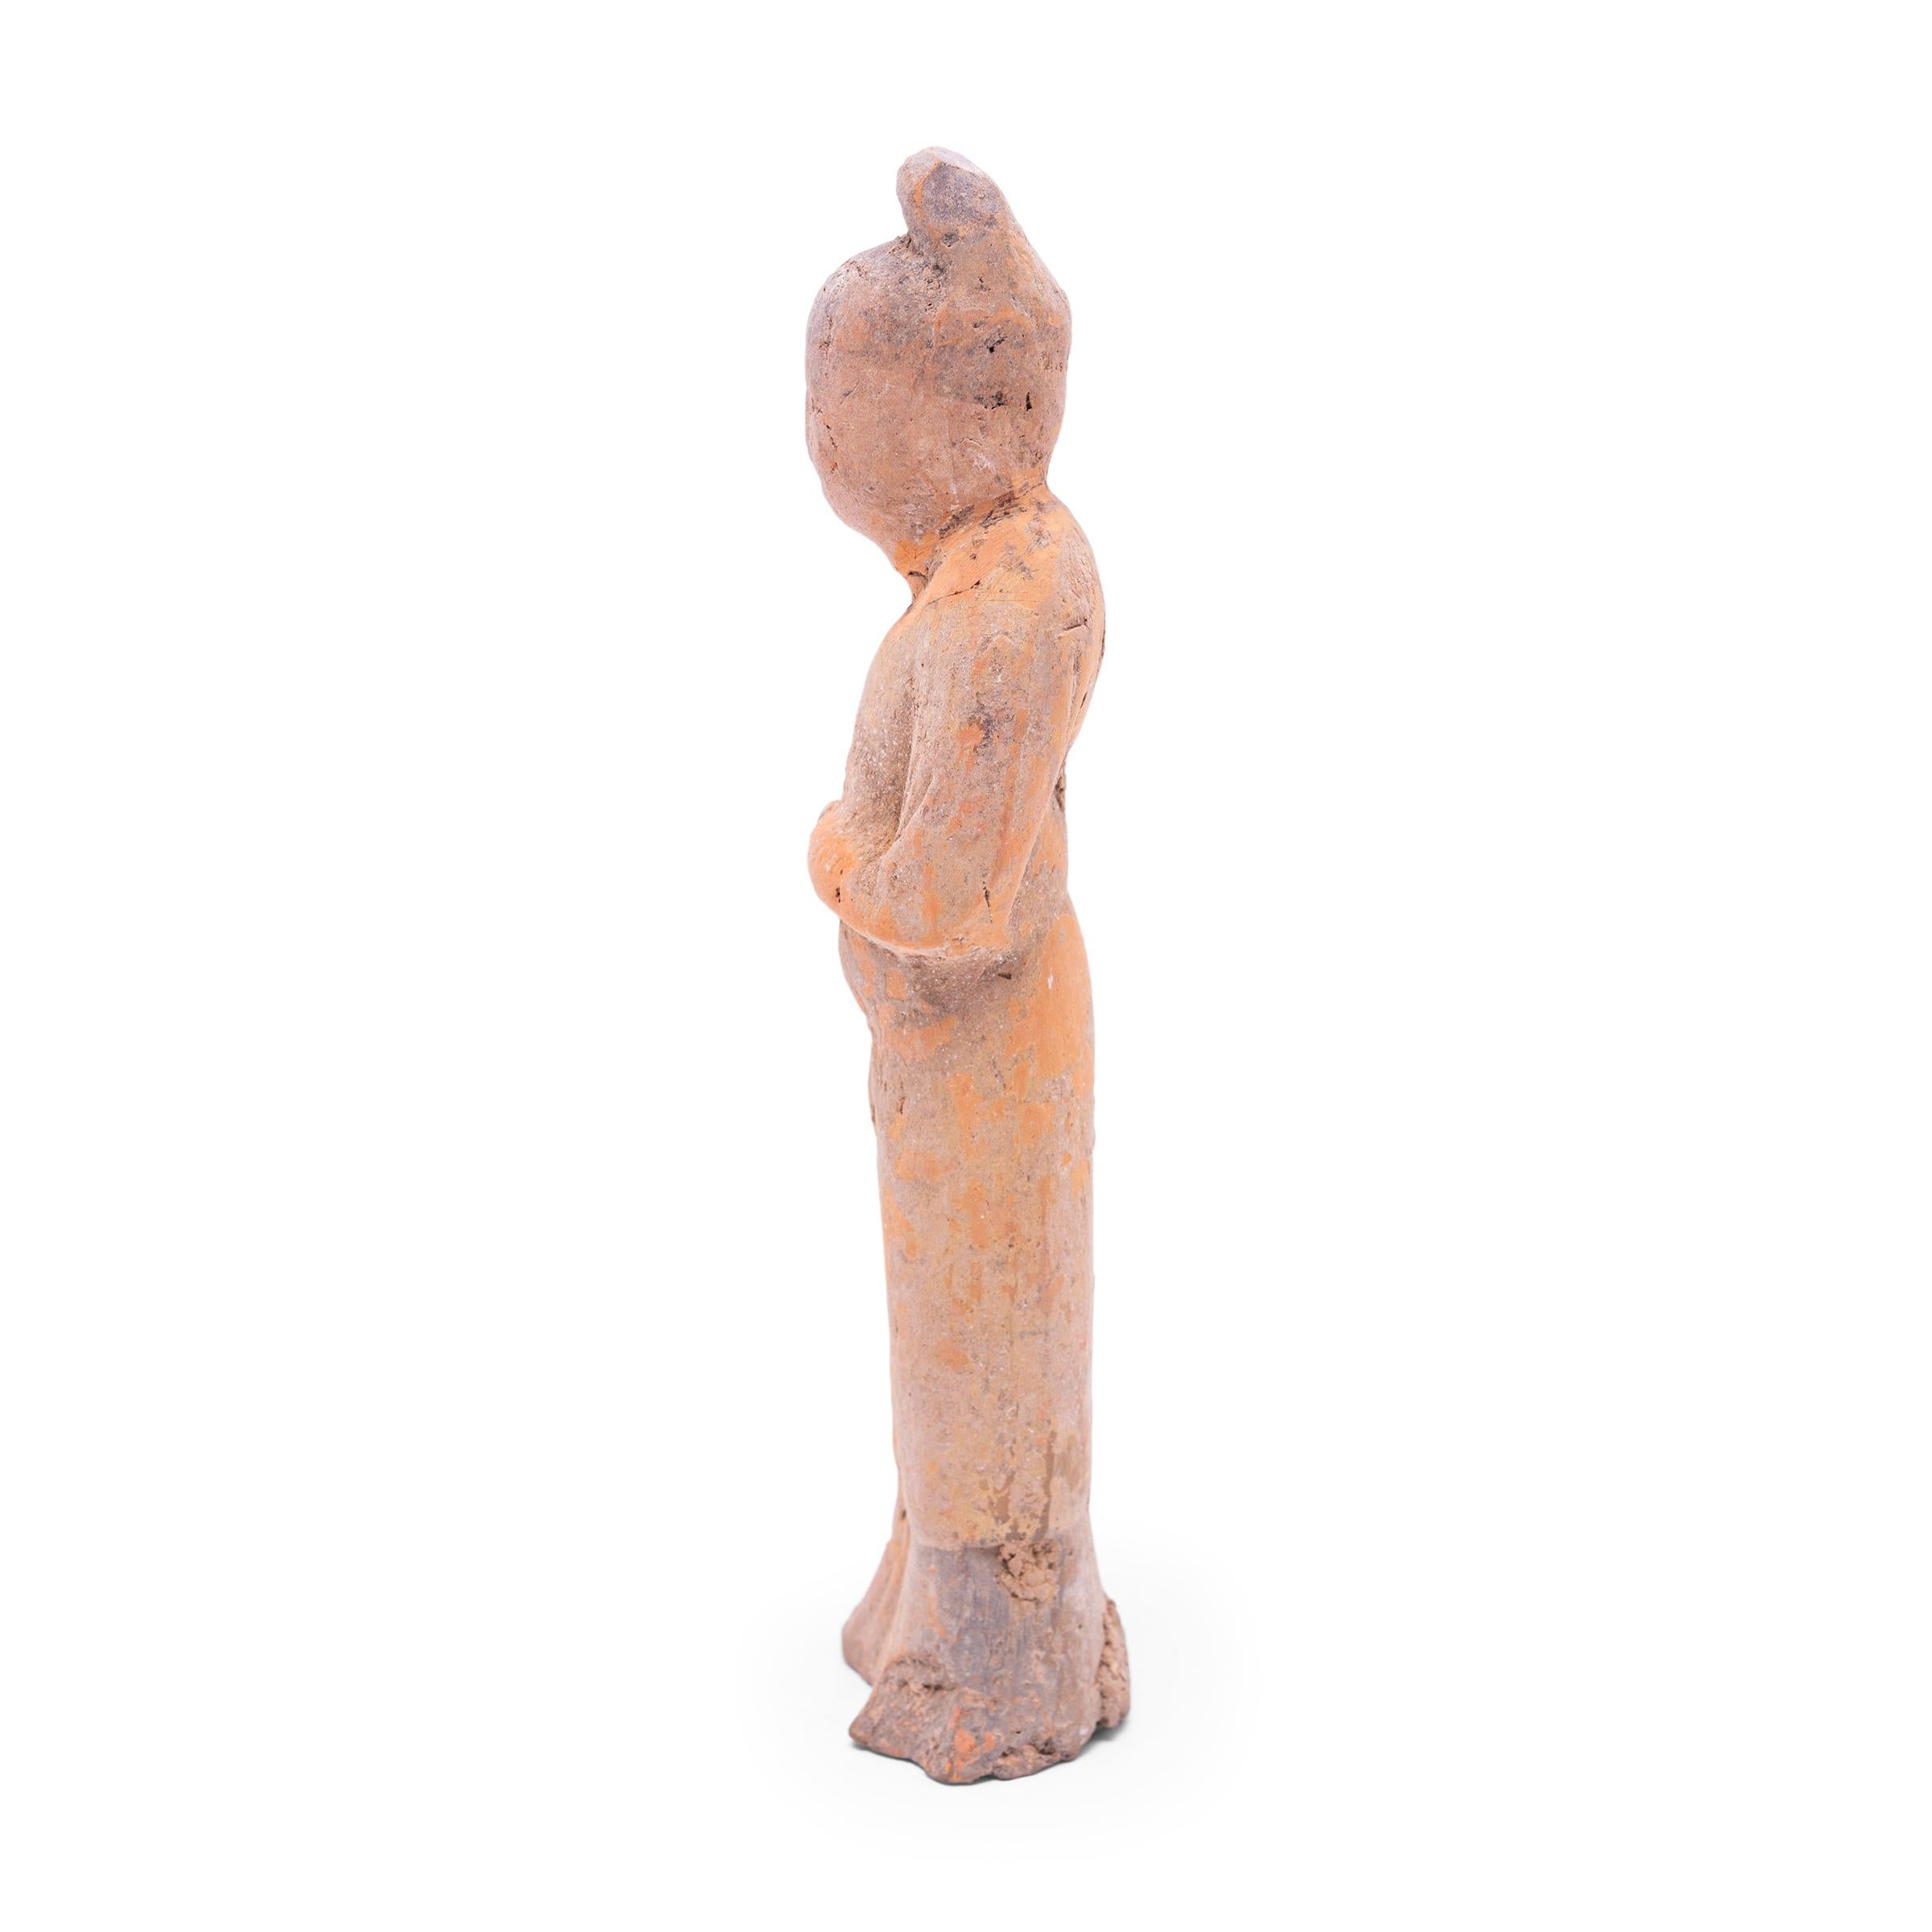 Moulée en terre cuite, cette petite sculpture est un type de figurine funéraire vieille de plusieurs siècles, connue sous le nom de míngqì. Ces figurines étaient placées dans les tombes des personnes de haut rang pour leur assurer un voyage en toute